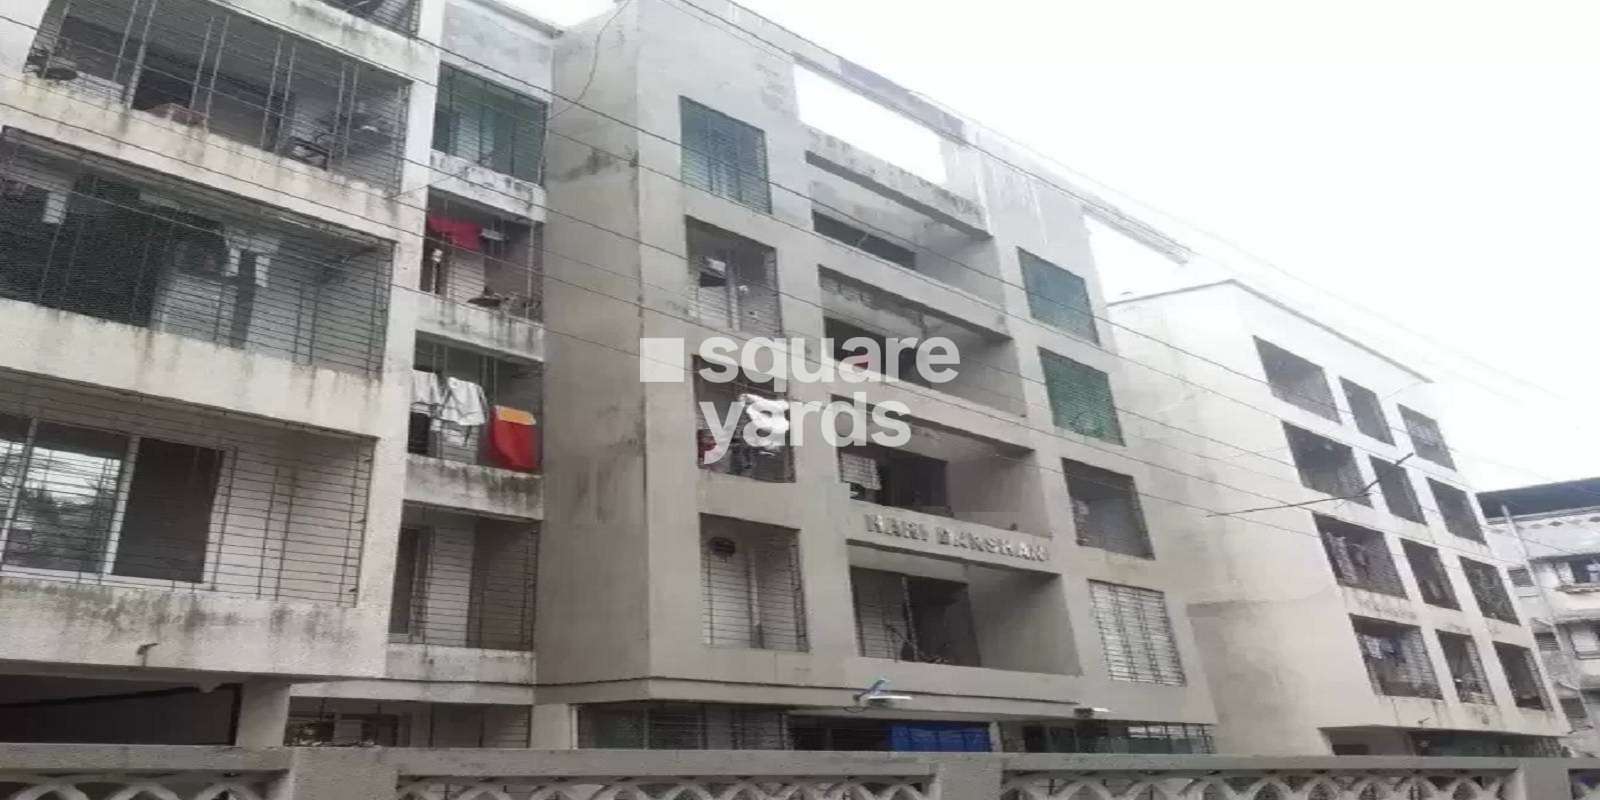 Hari Darshan Apartments Cover Image